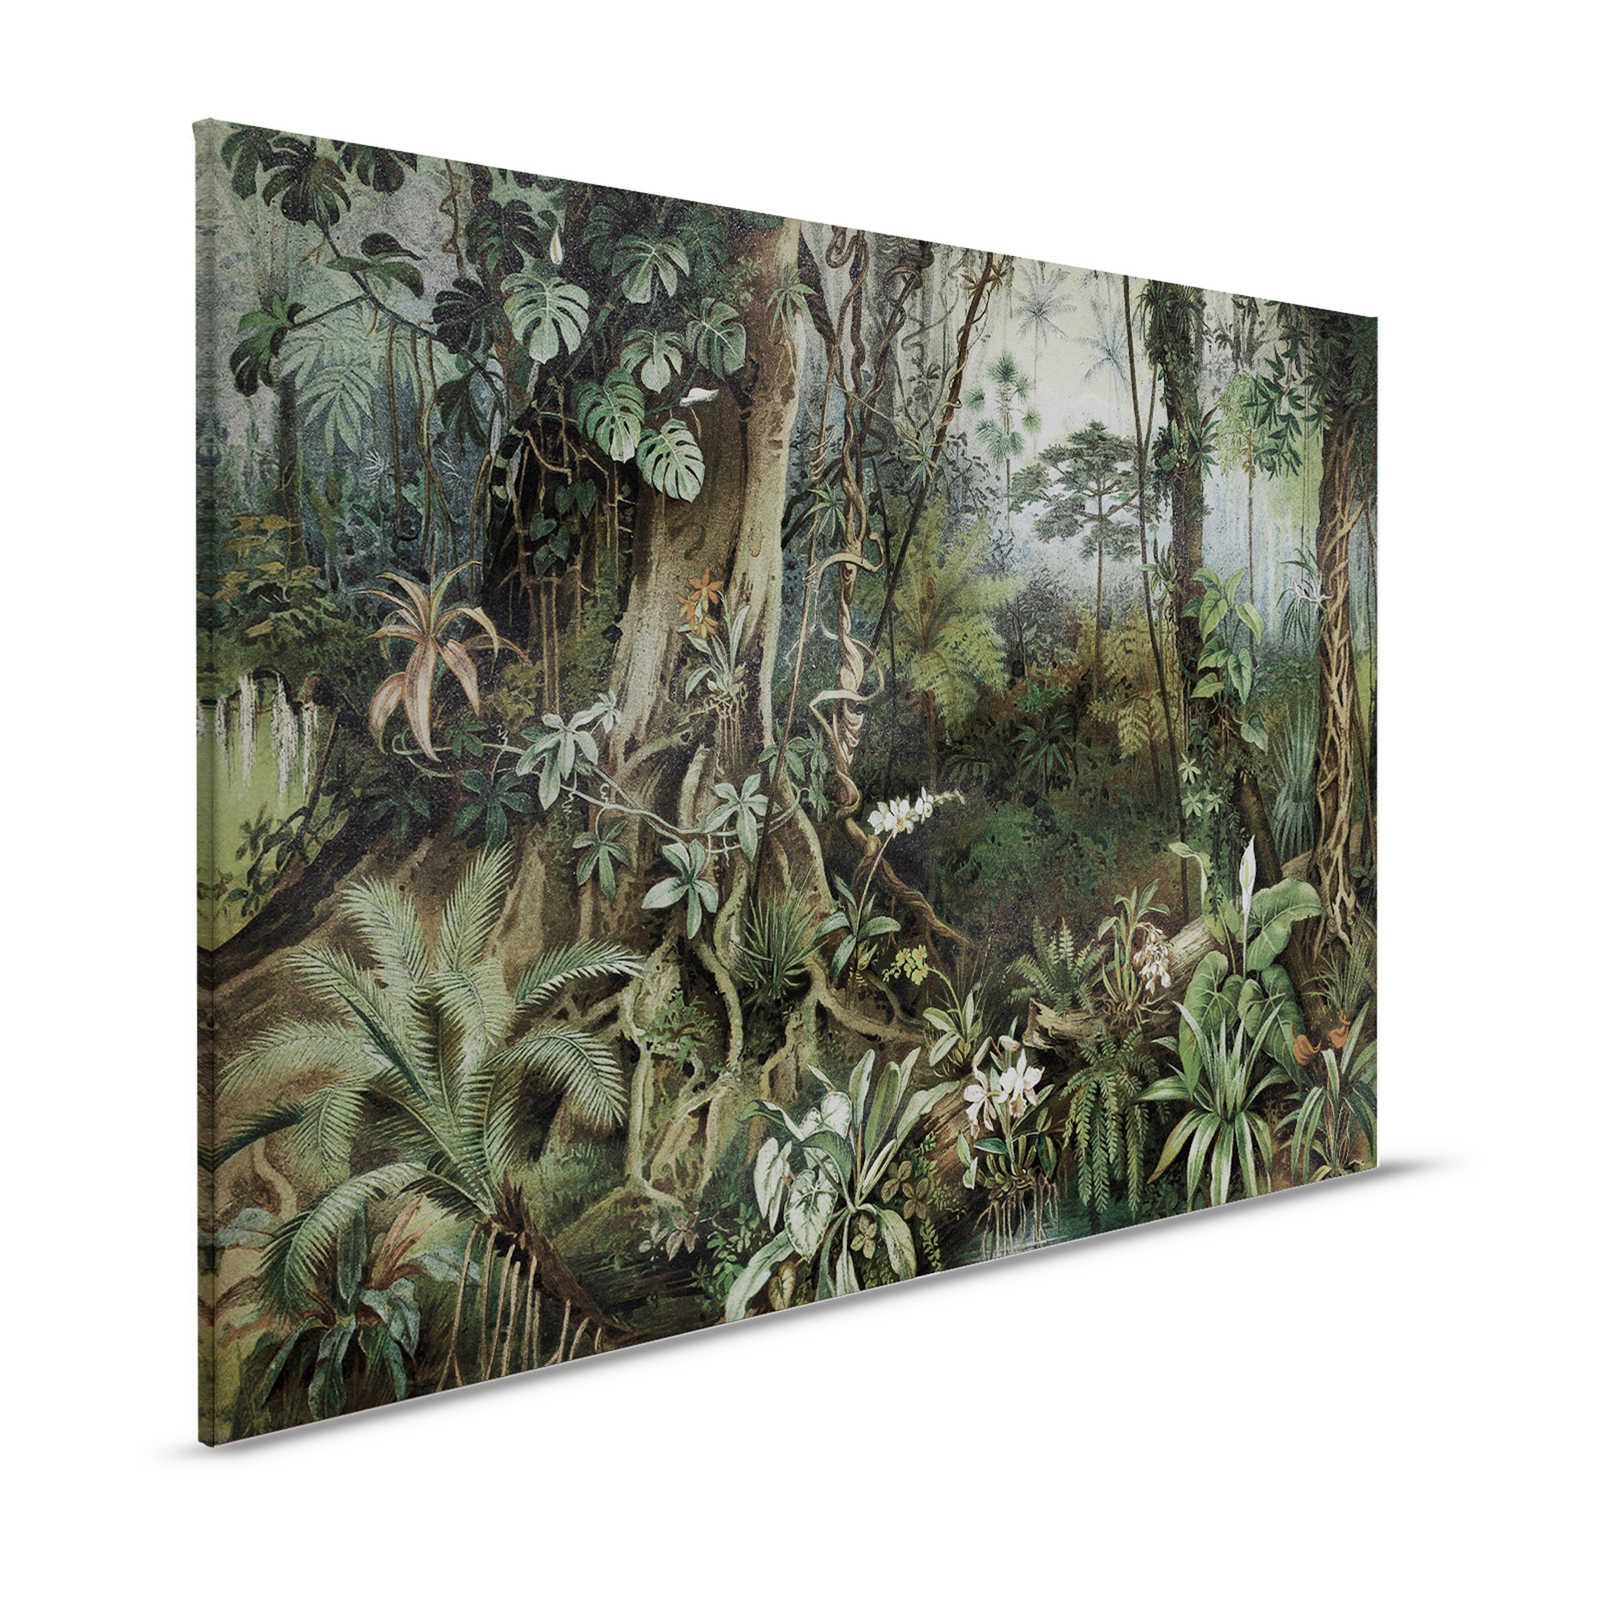 Toile jungle style dessin - 1,20 m x 0,80 m
